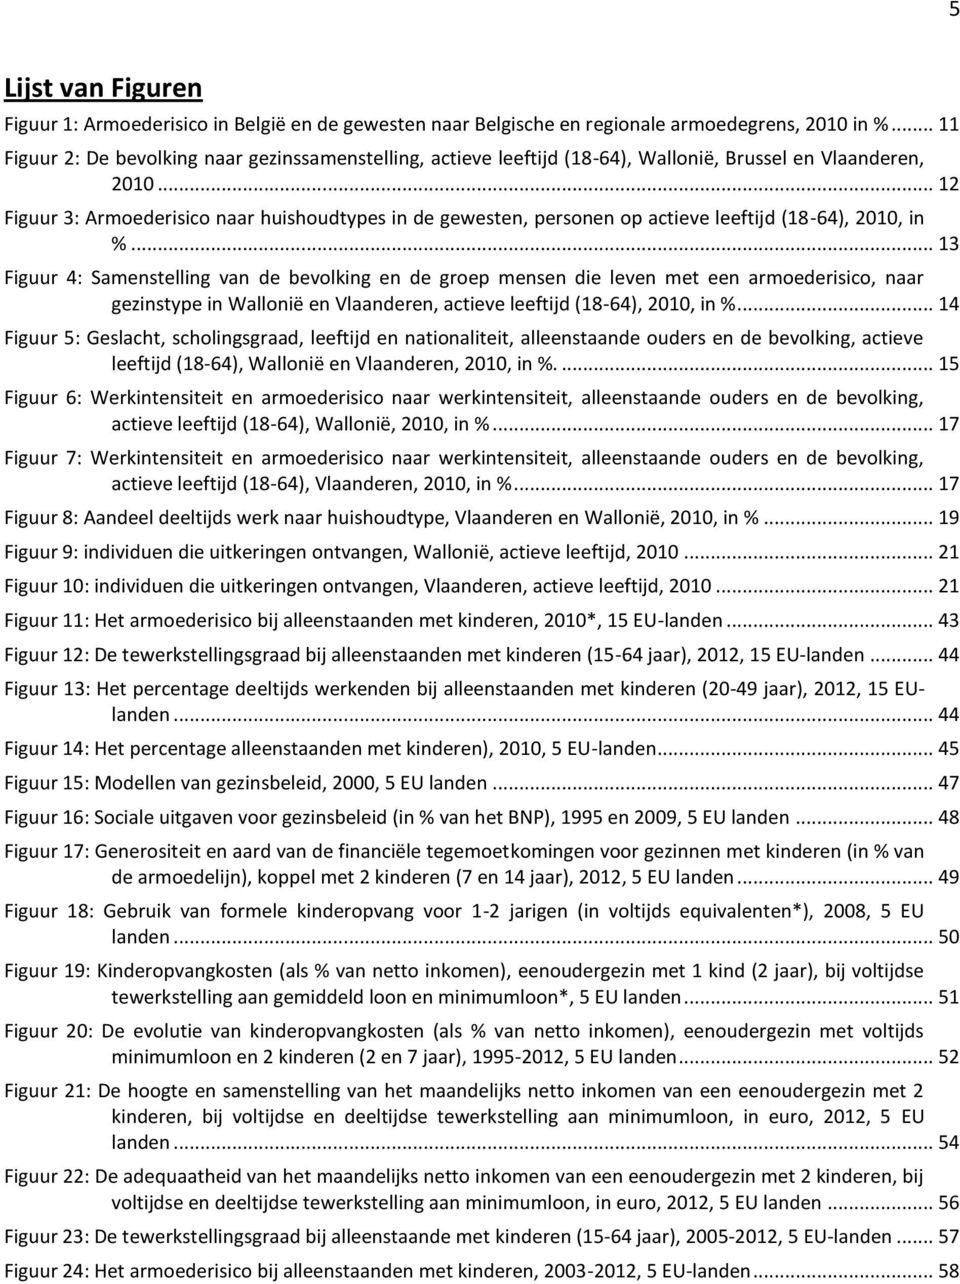 .. 12 Figuur 3: Armoederisico naar huishoudtypes in de gewesten, personen op actieve leeftijd (18-64), 2010, in %.